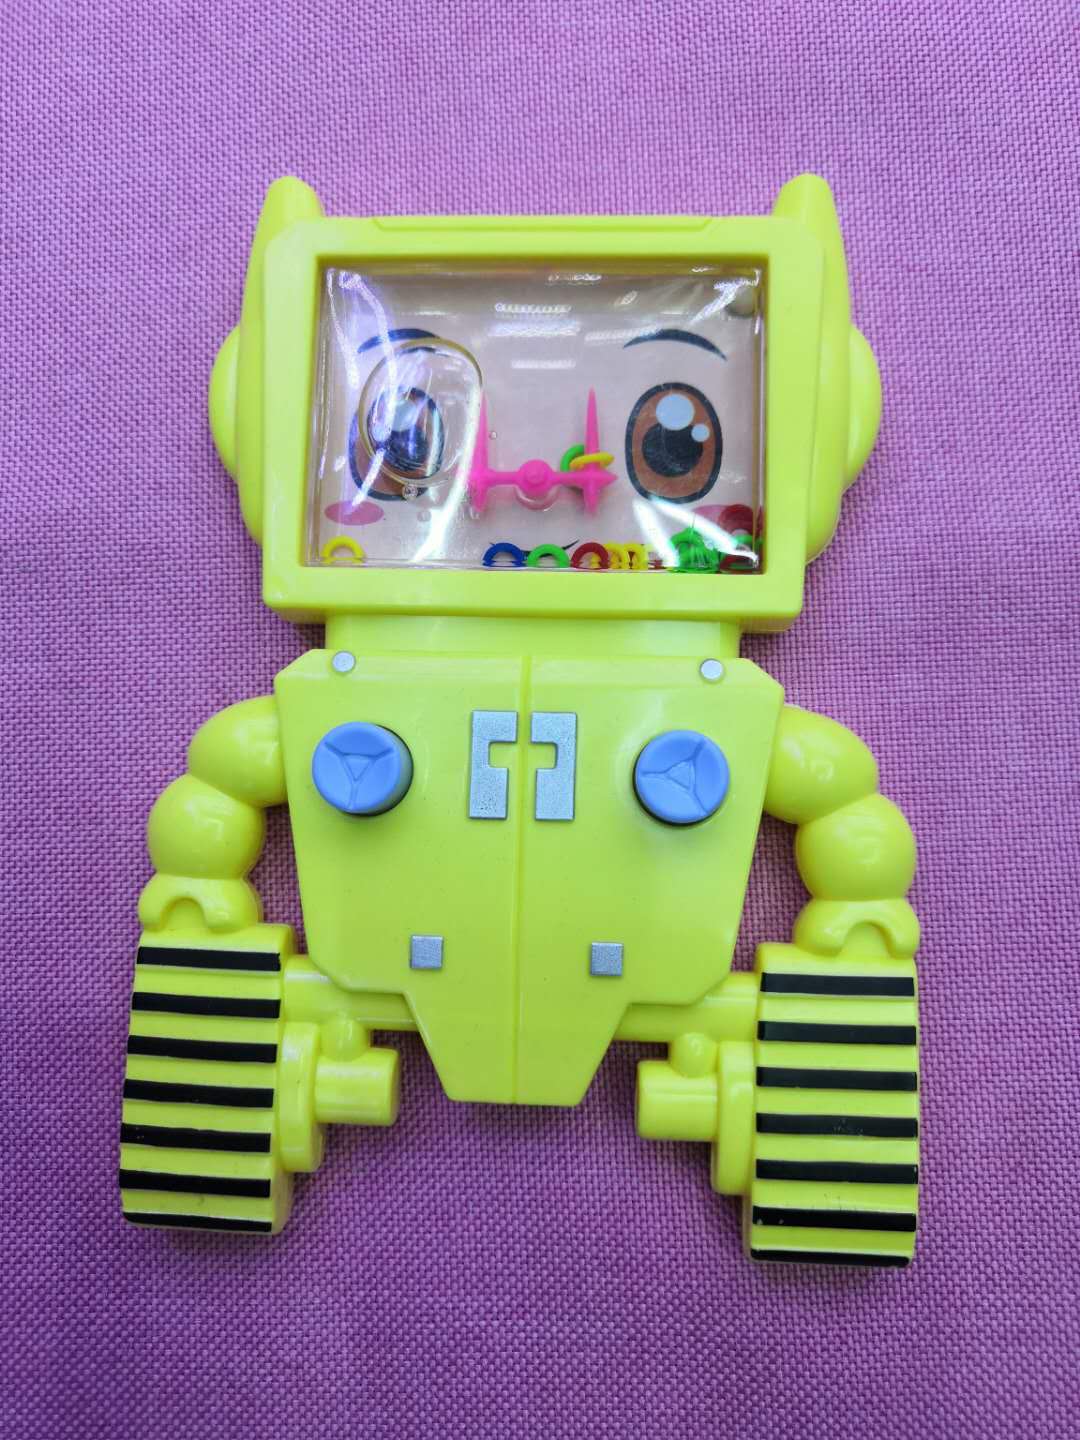 机器人卡通水机游戏机玩具创意玩具怀旧玩具批发